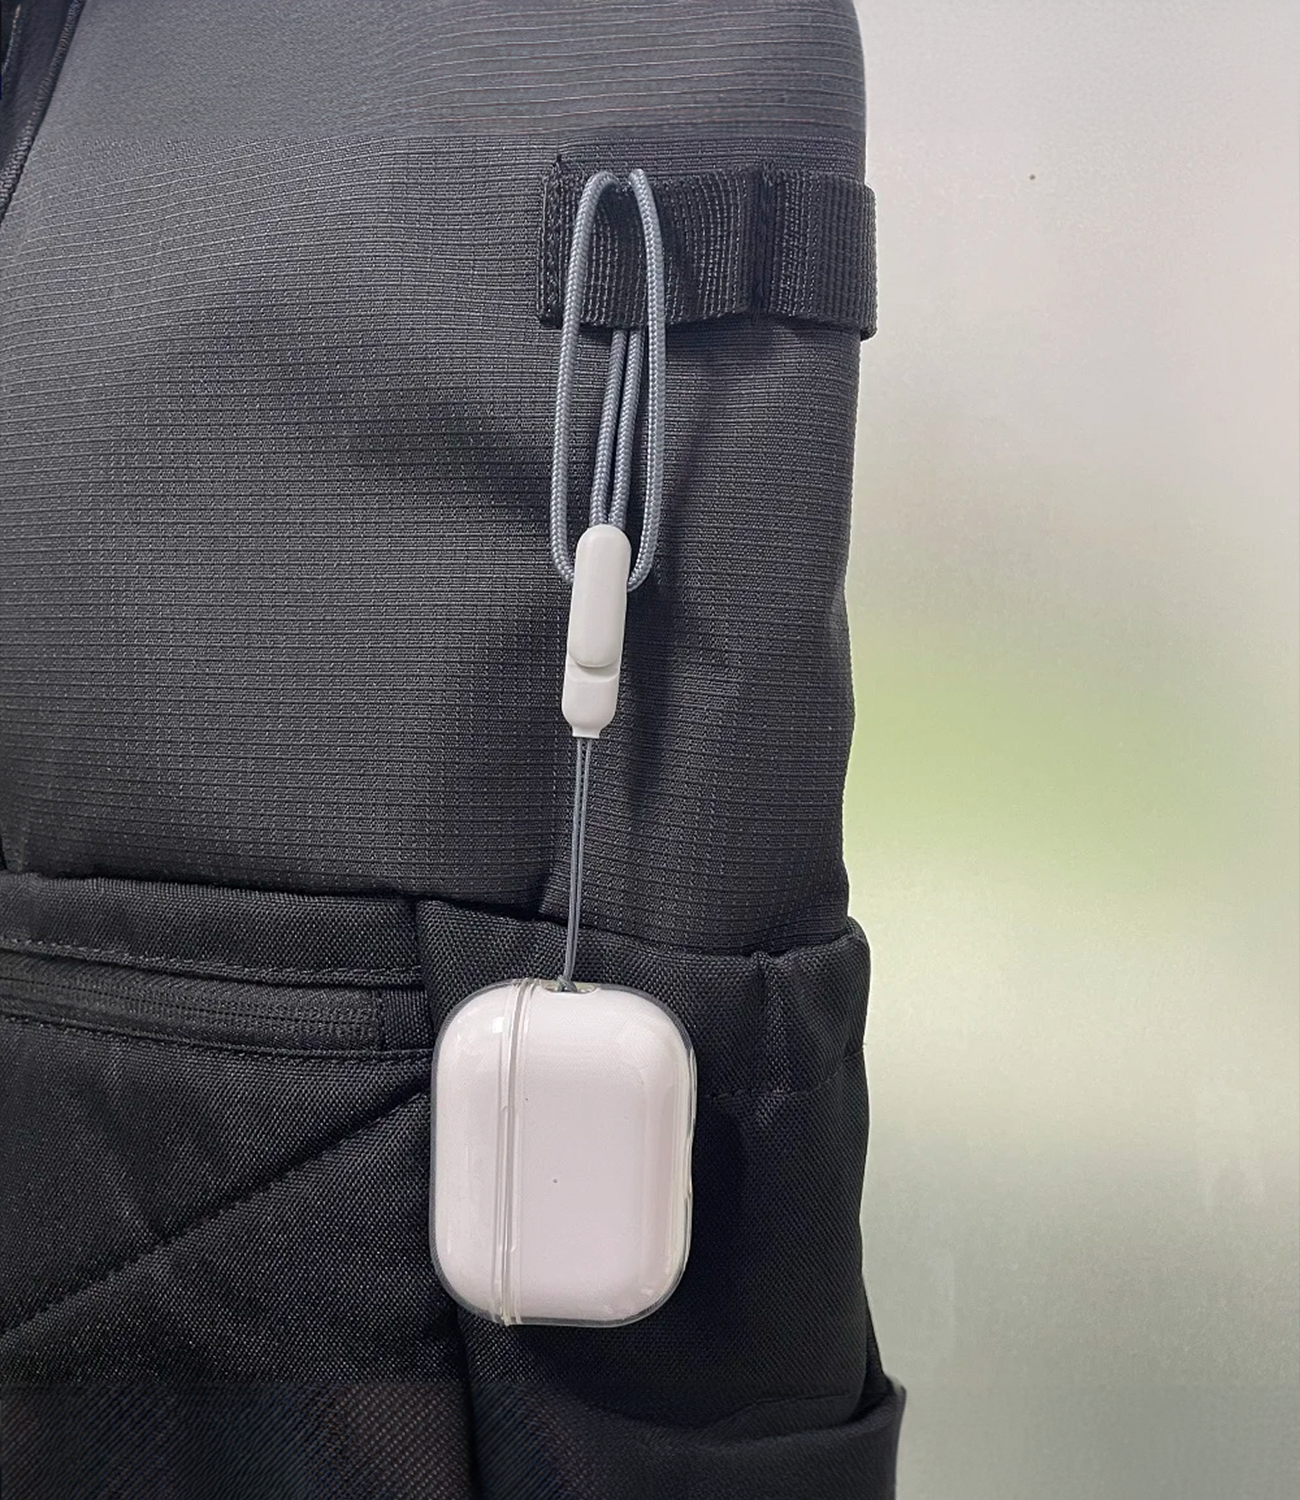 Airpods case on backpack bag - Lamkari